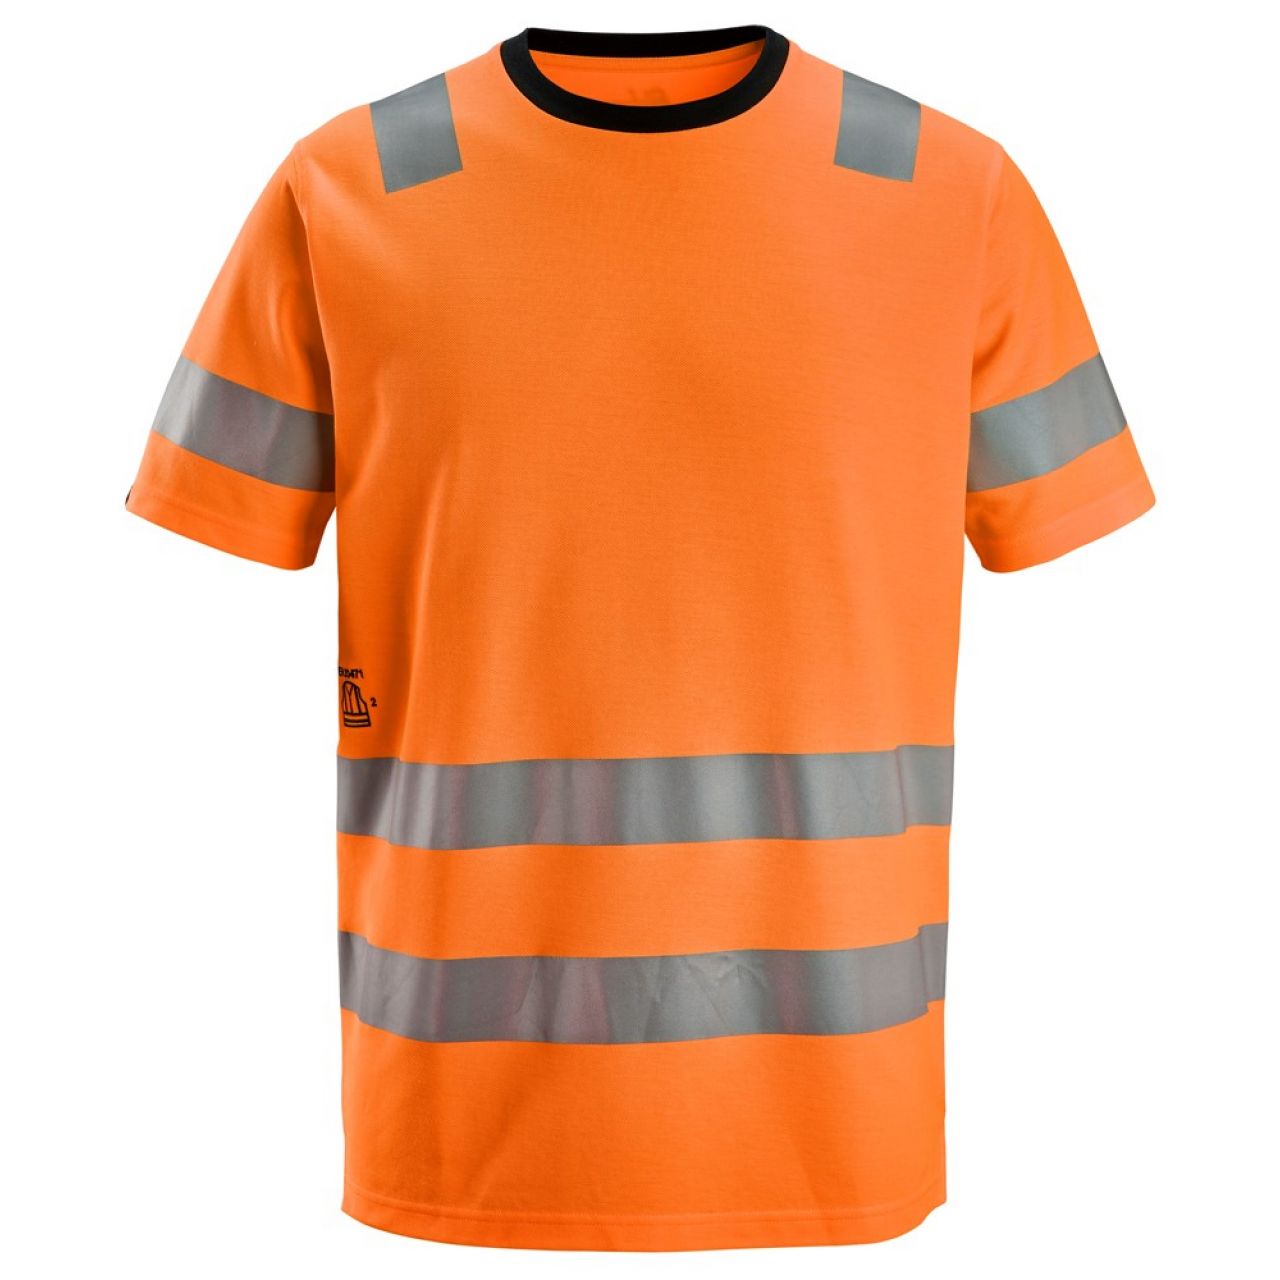 2536 Camiseta de manga corta de alta visibilidad clase 2 naranja talla M